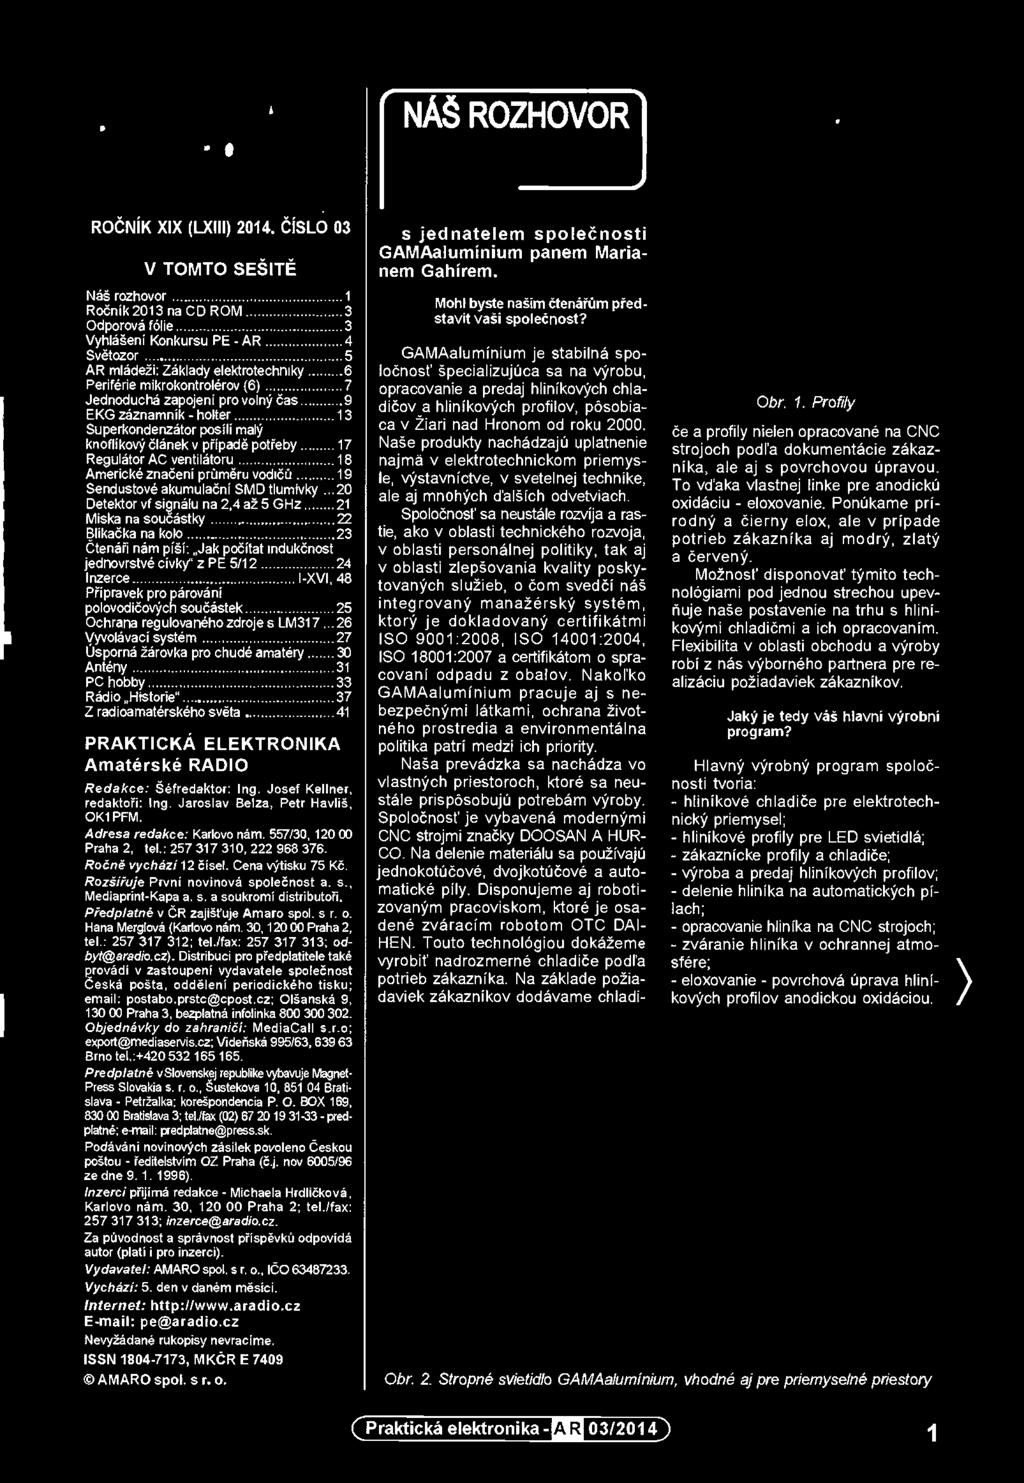 Predplatné vslovenskej republika vybavuje Magnet- Press Slovakia s. r. o., šustekova 10, 851 04 Bratislava - Petržalka; korešpondencia P. O. BOX 169, 830 00 Bratislava 3; td.